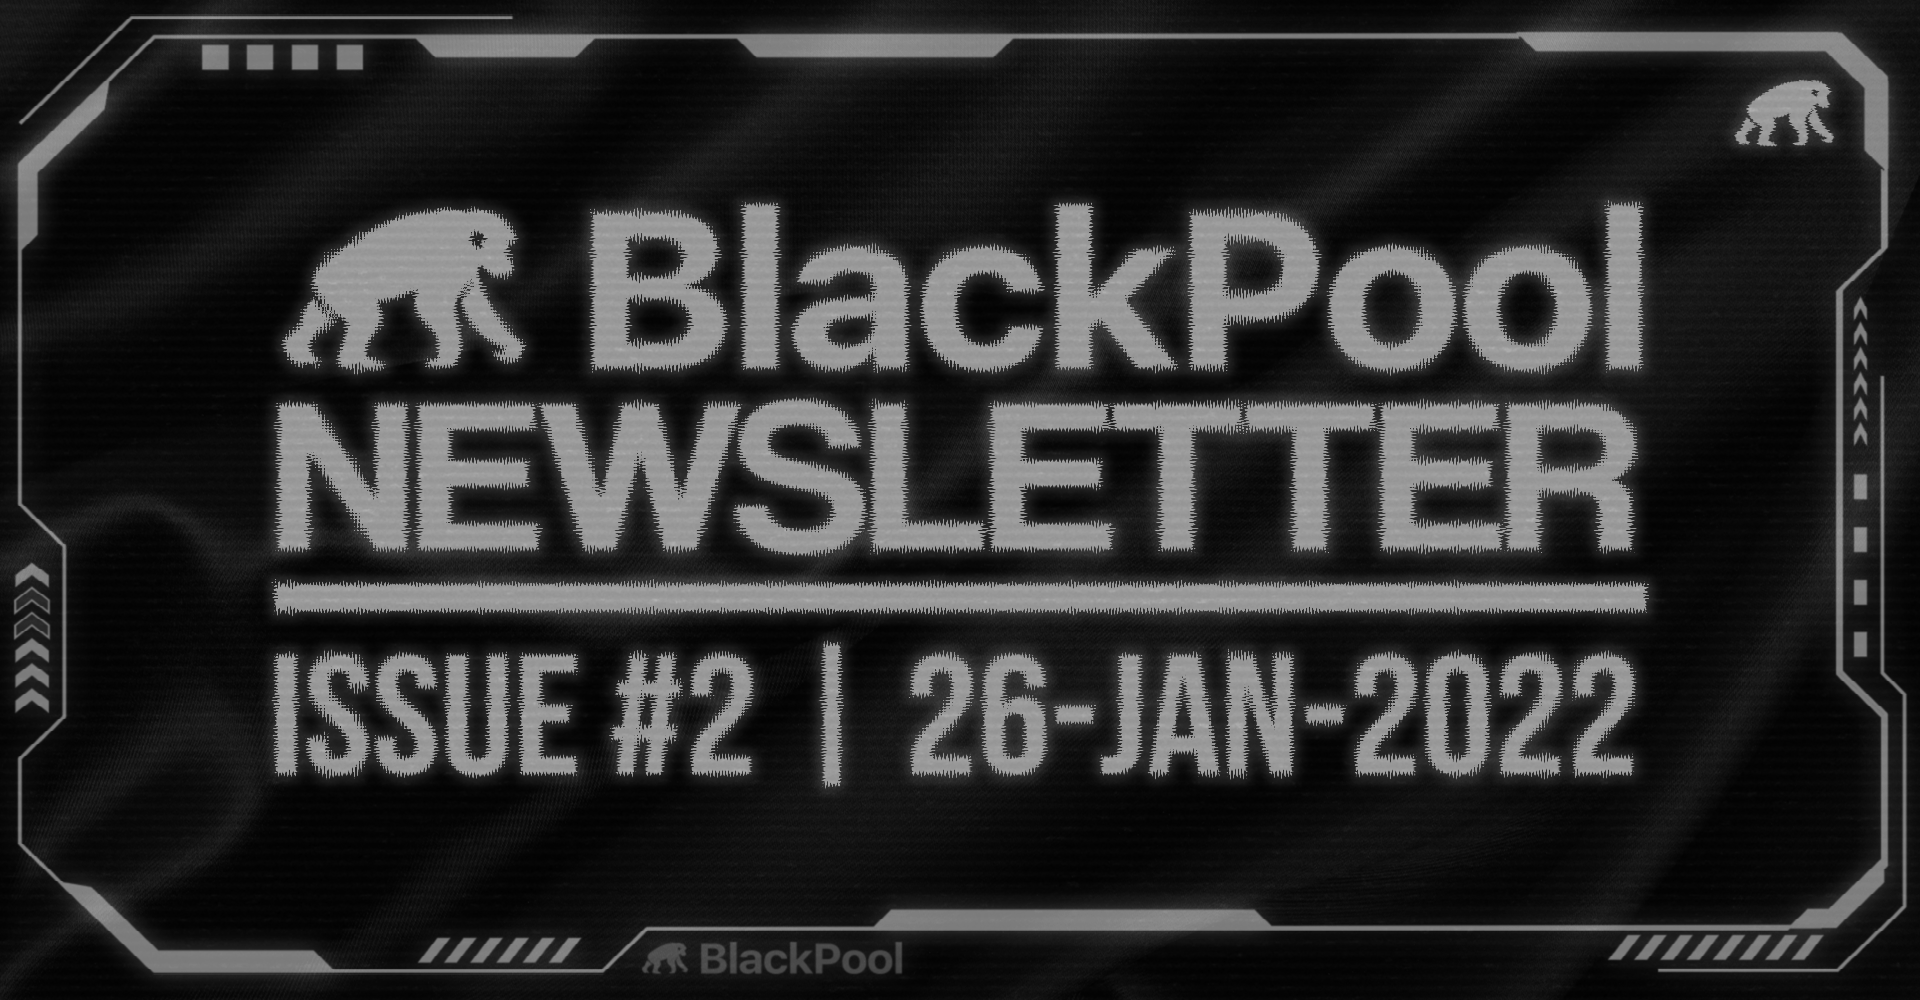 BlackPool Newsletter #2